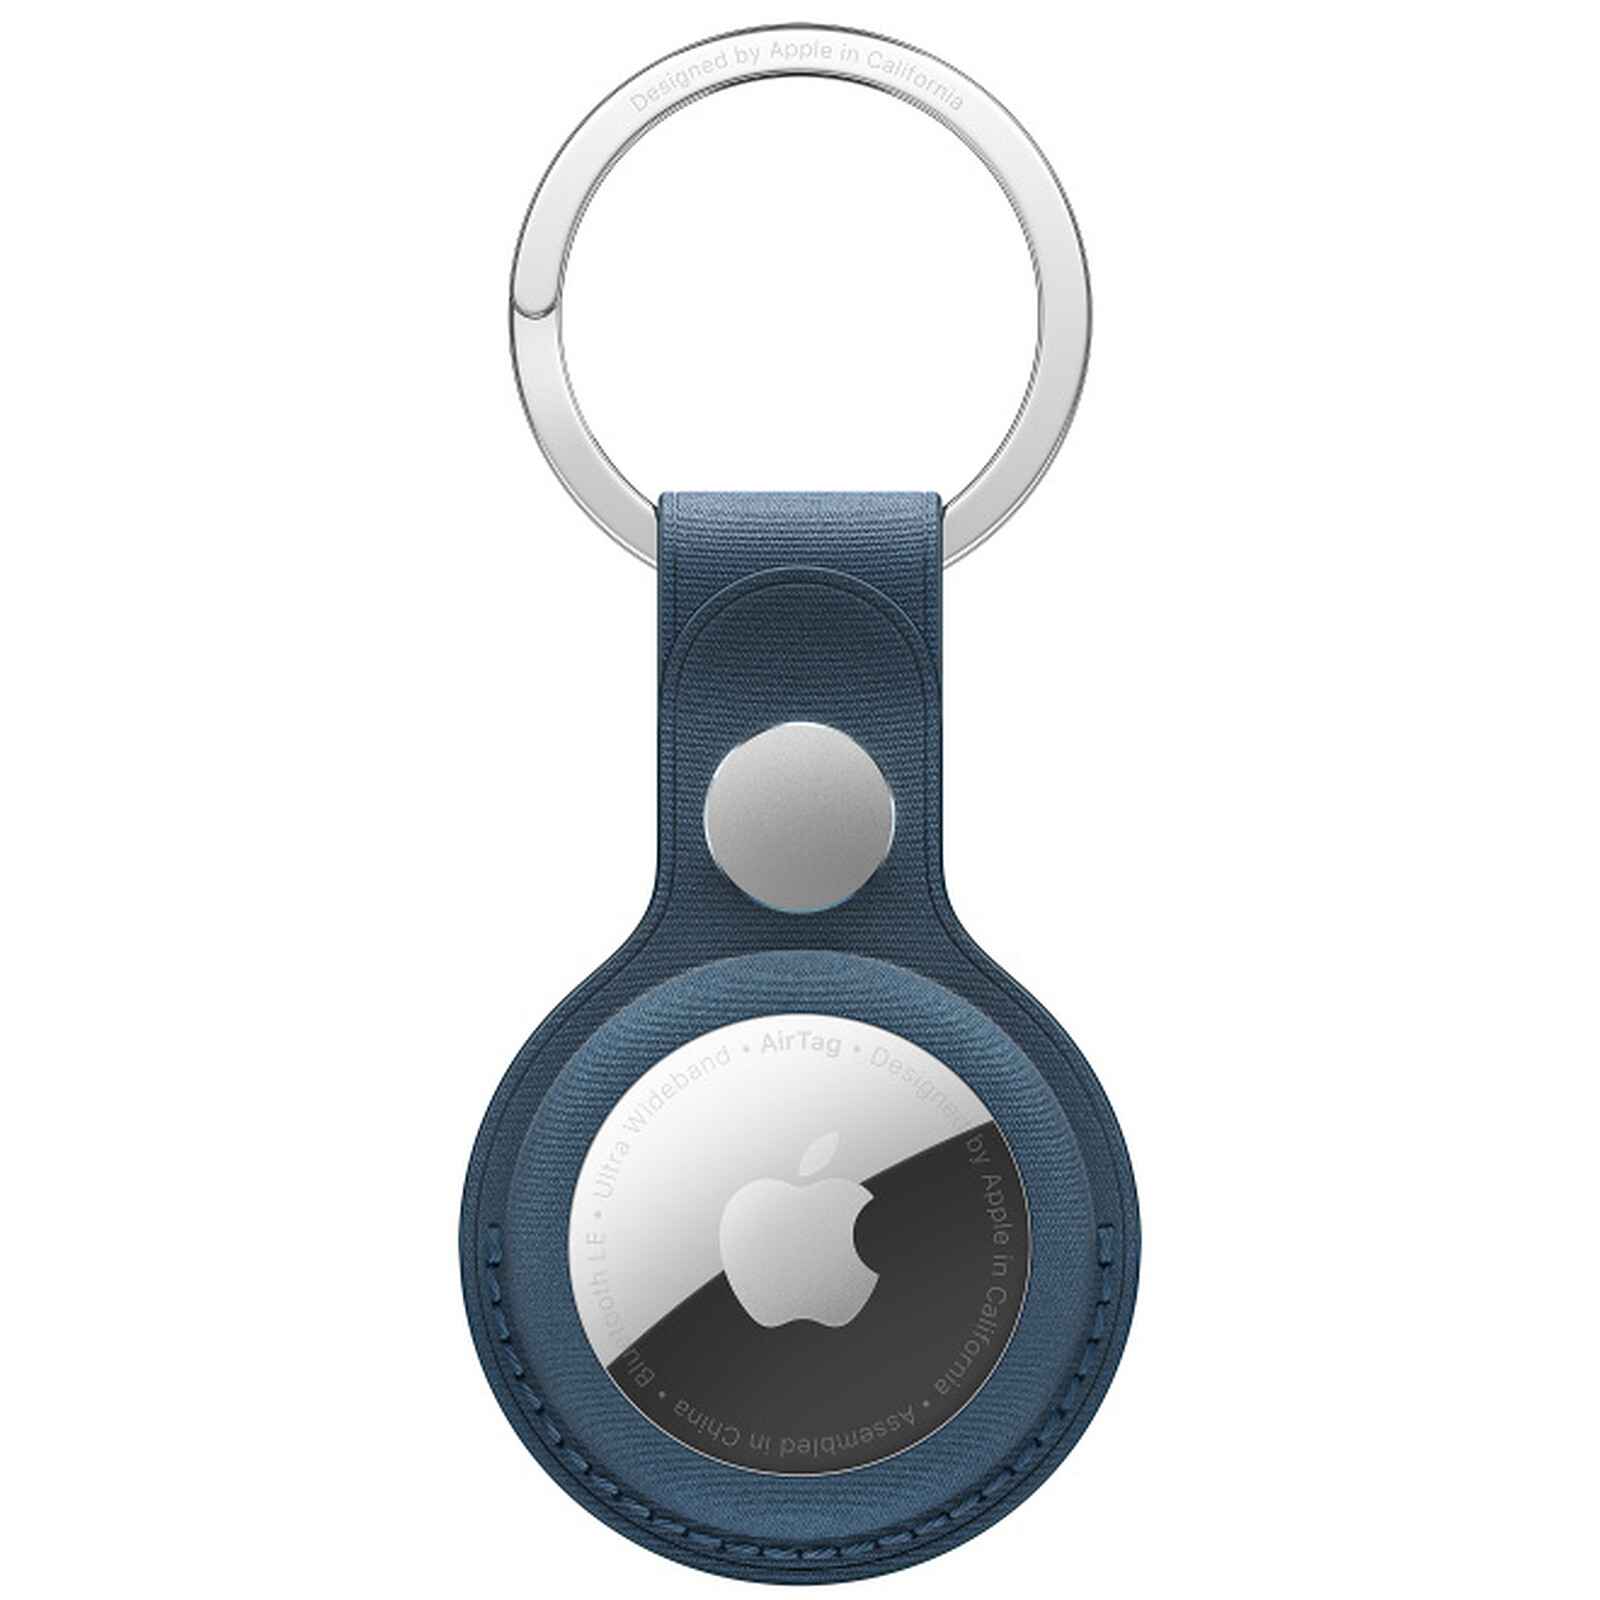 Porte-cartes en tissage fin avec MagSafe bleu Pacifique - Apple (FR)